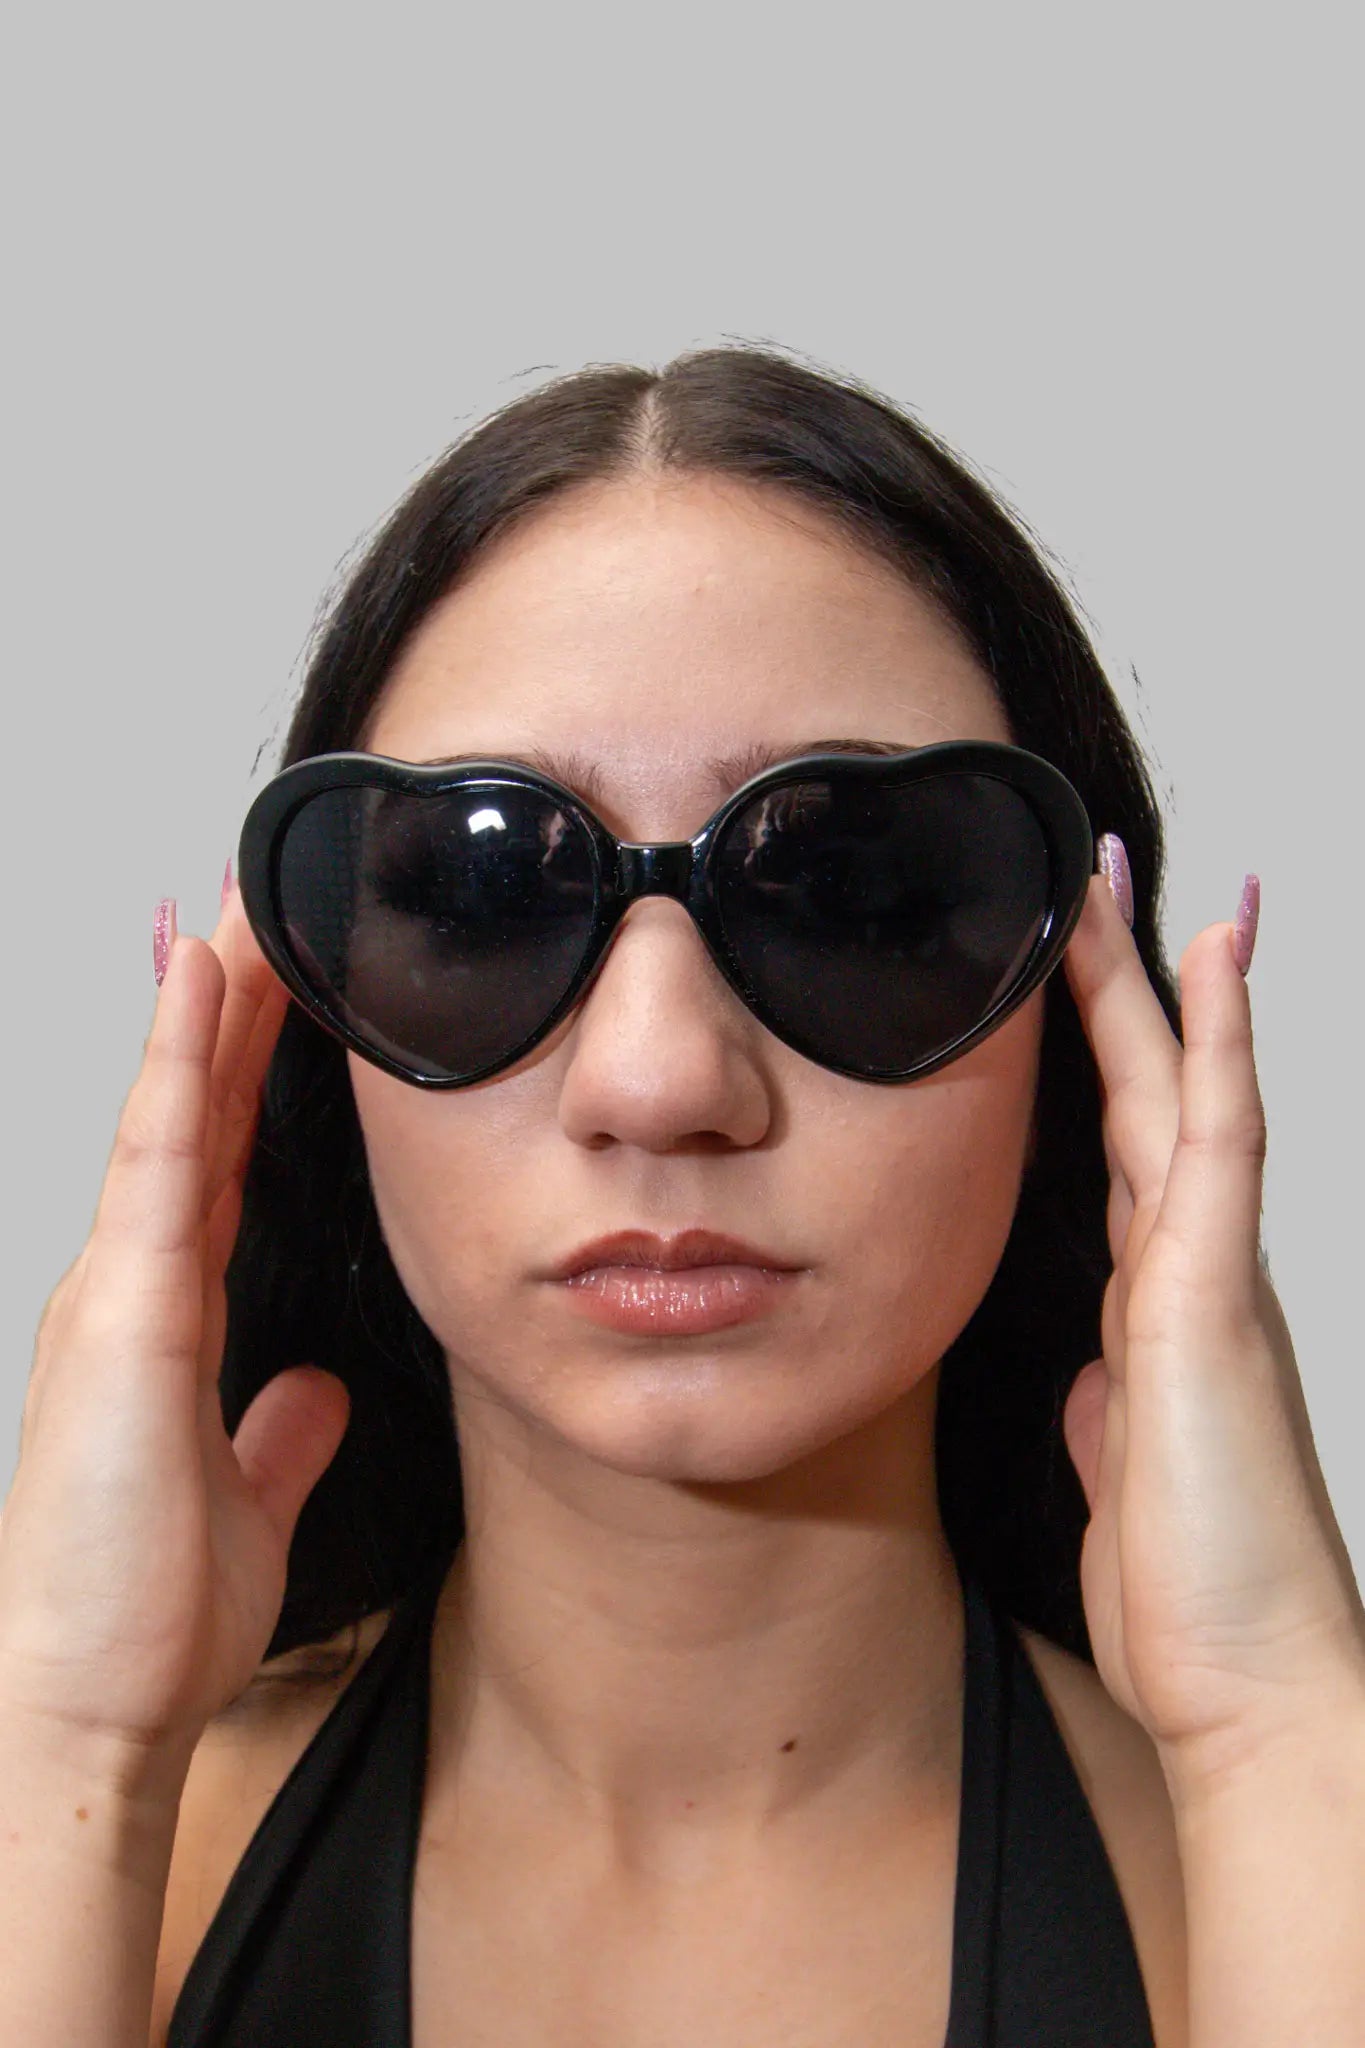 Techno Rave HeartGlow Glasses: Lichteffekt-Brille weiss